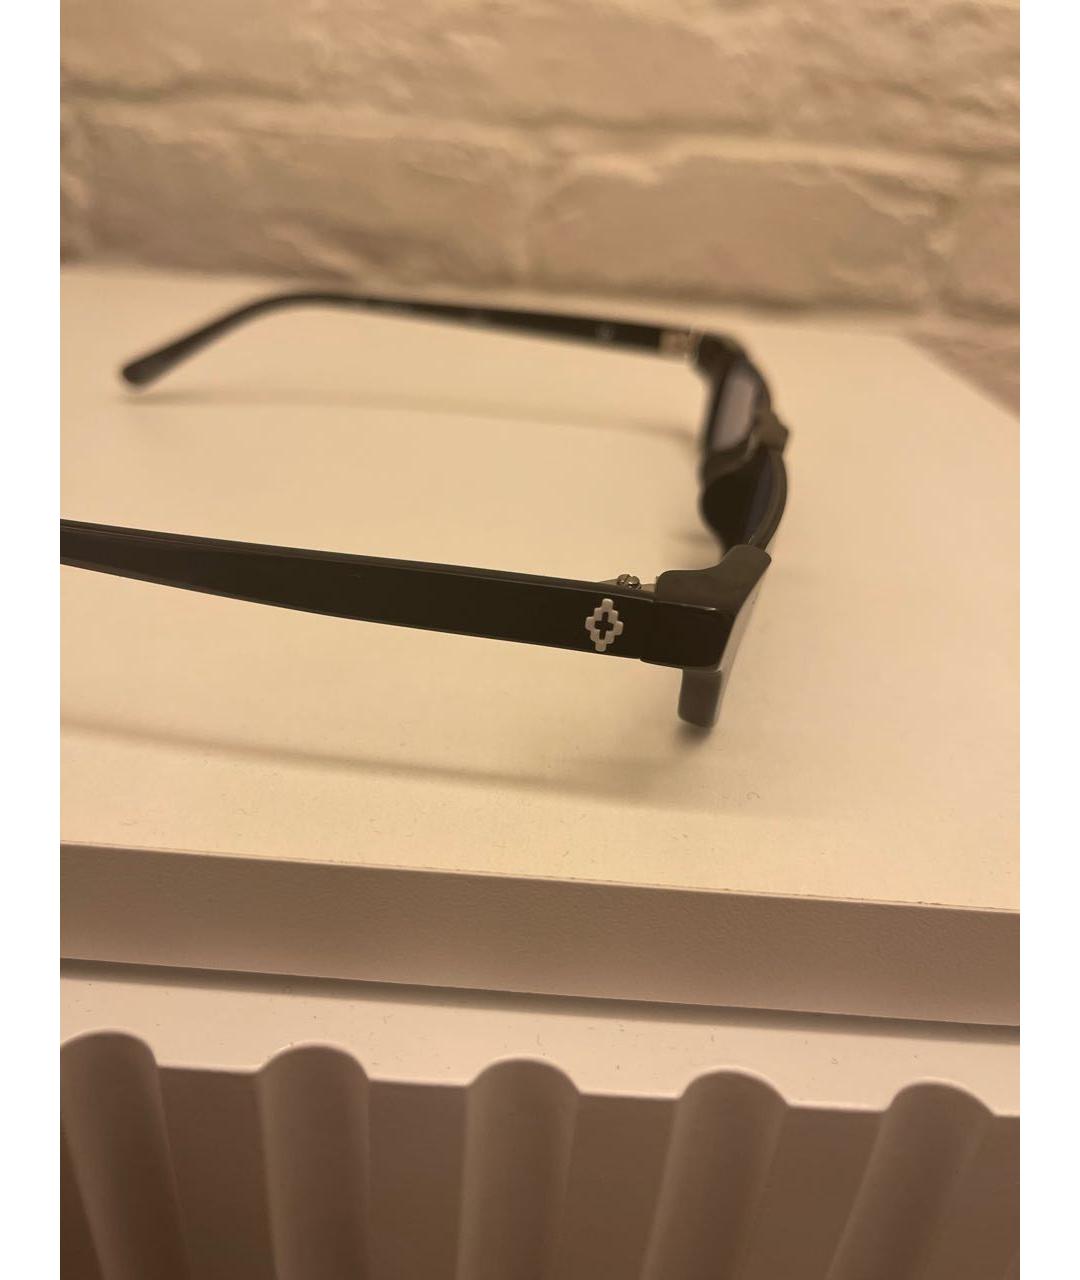 LINDA FARROW Черные пластиковые солнцезащитные очки, фото 3